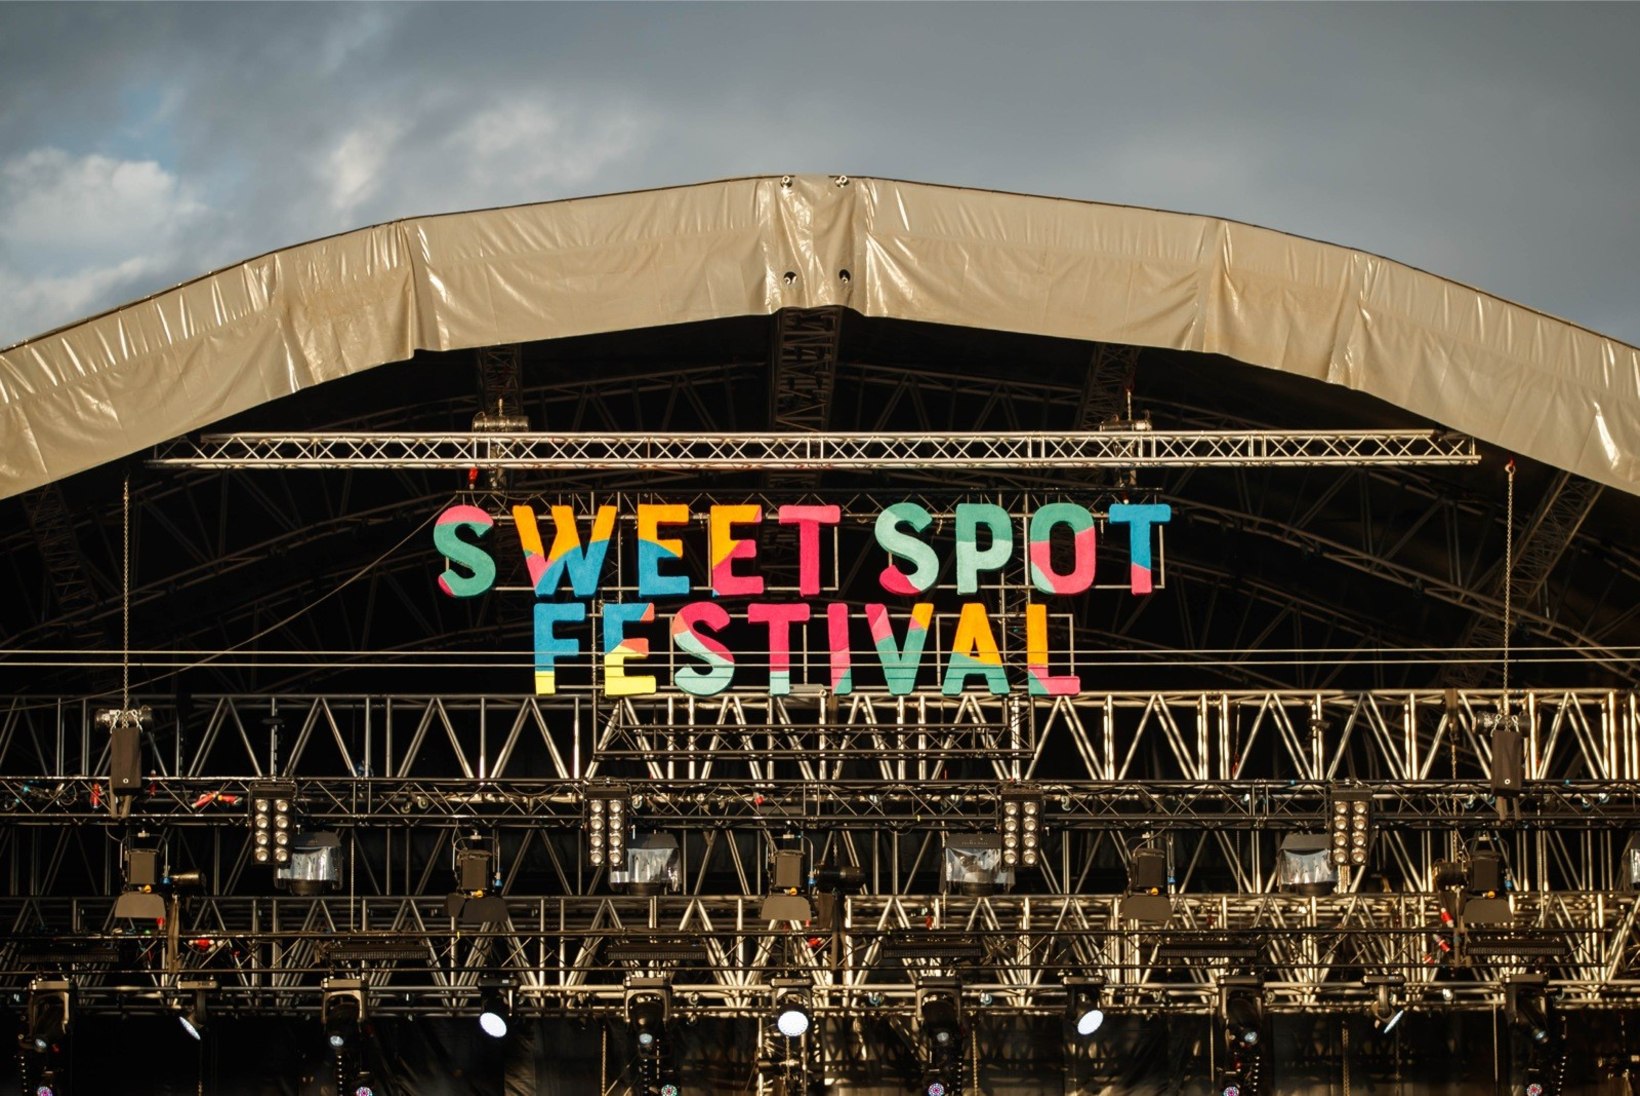 Kas Kultuurikatlas toimuma pidanud linnafestival Sweet Spot jääb ära?